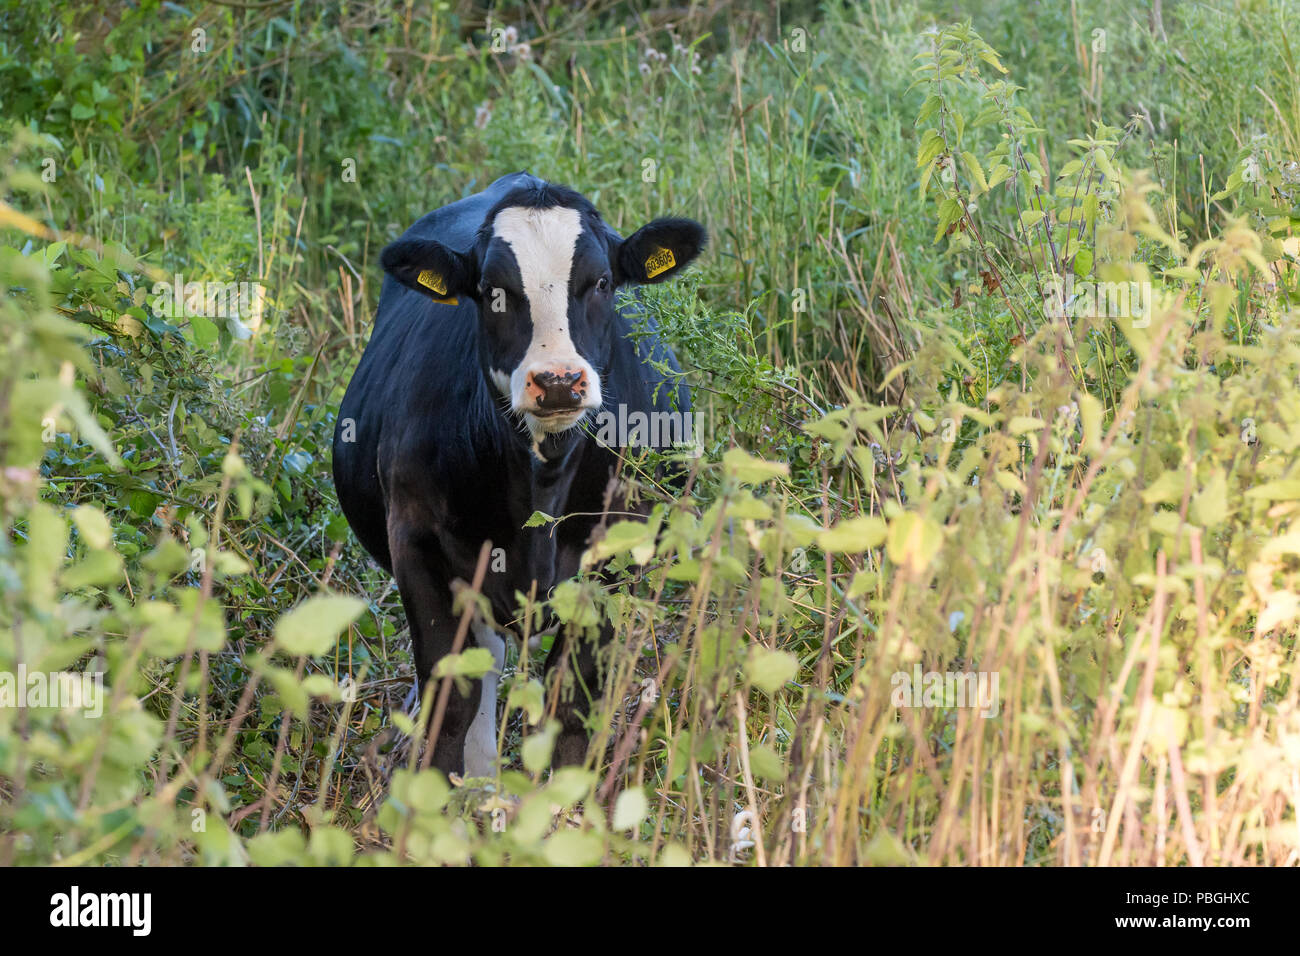 Bianco e nero facce di vacca la telecamera attraverso piante verdi, con giallo di marchi auricolari e nero vola sulla sua faccia Foto Stock